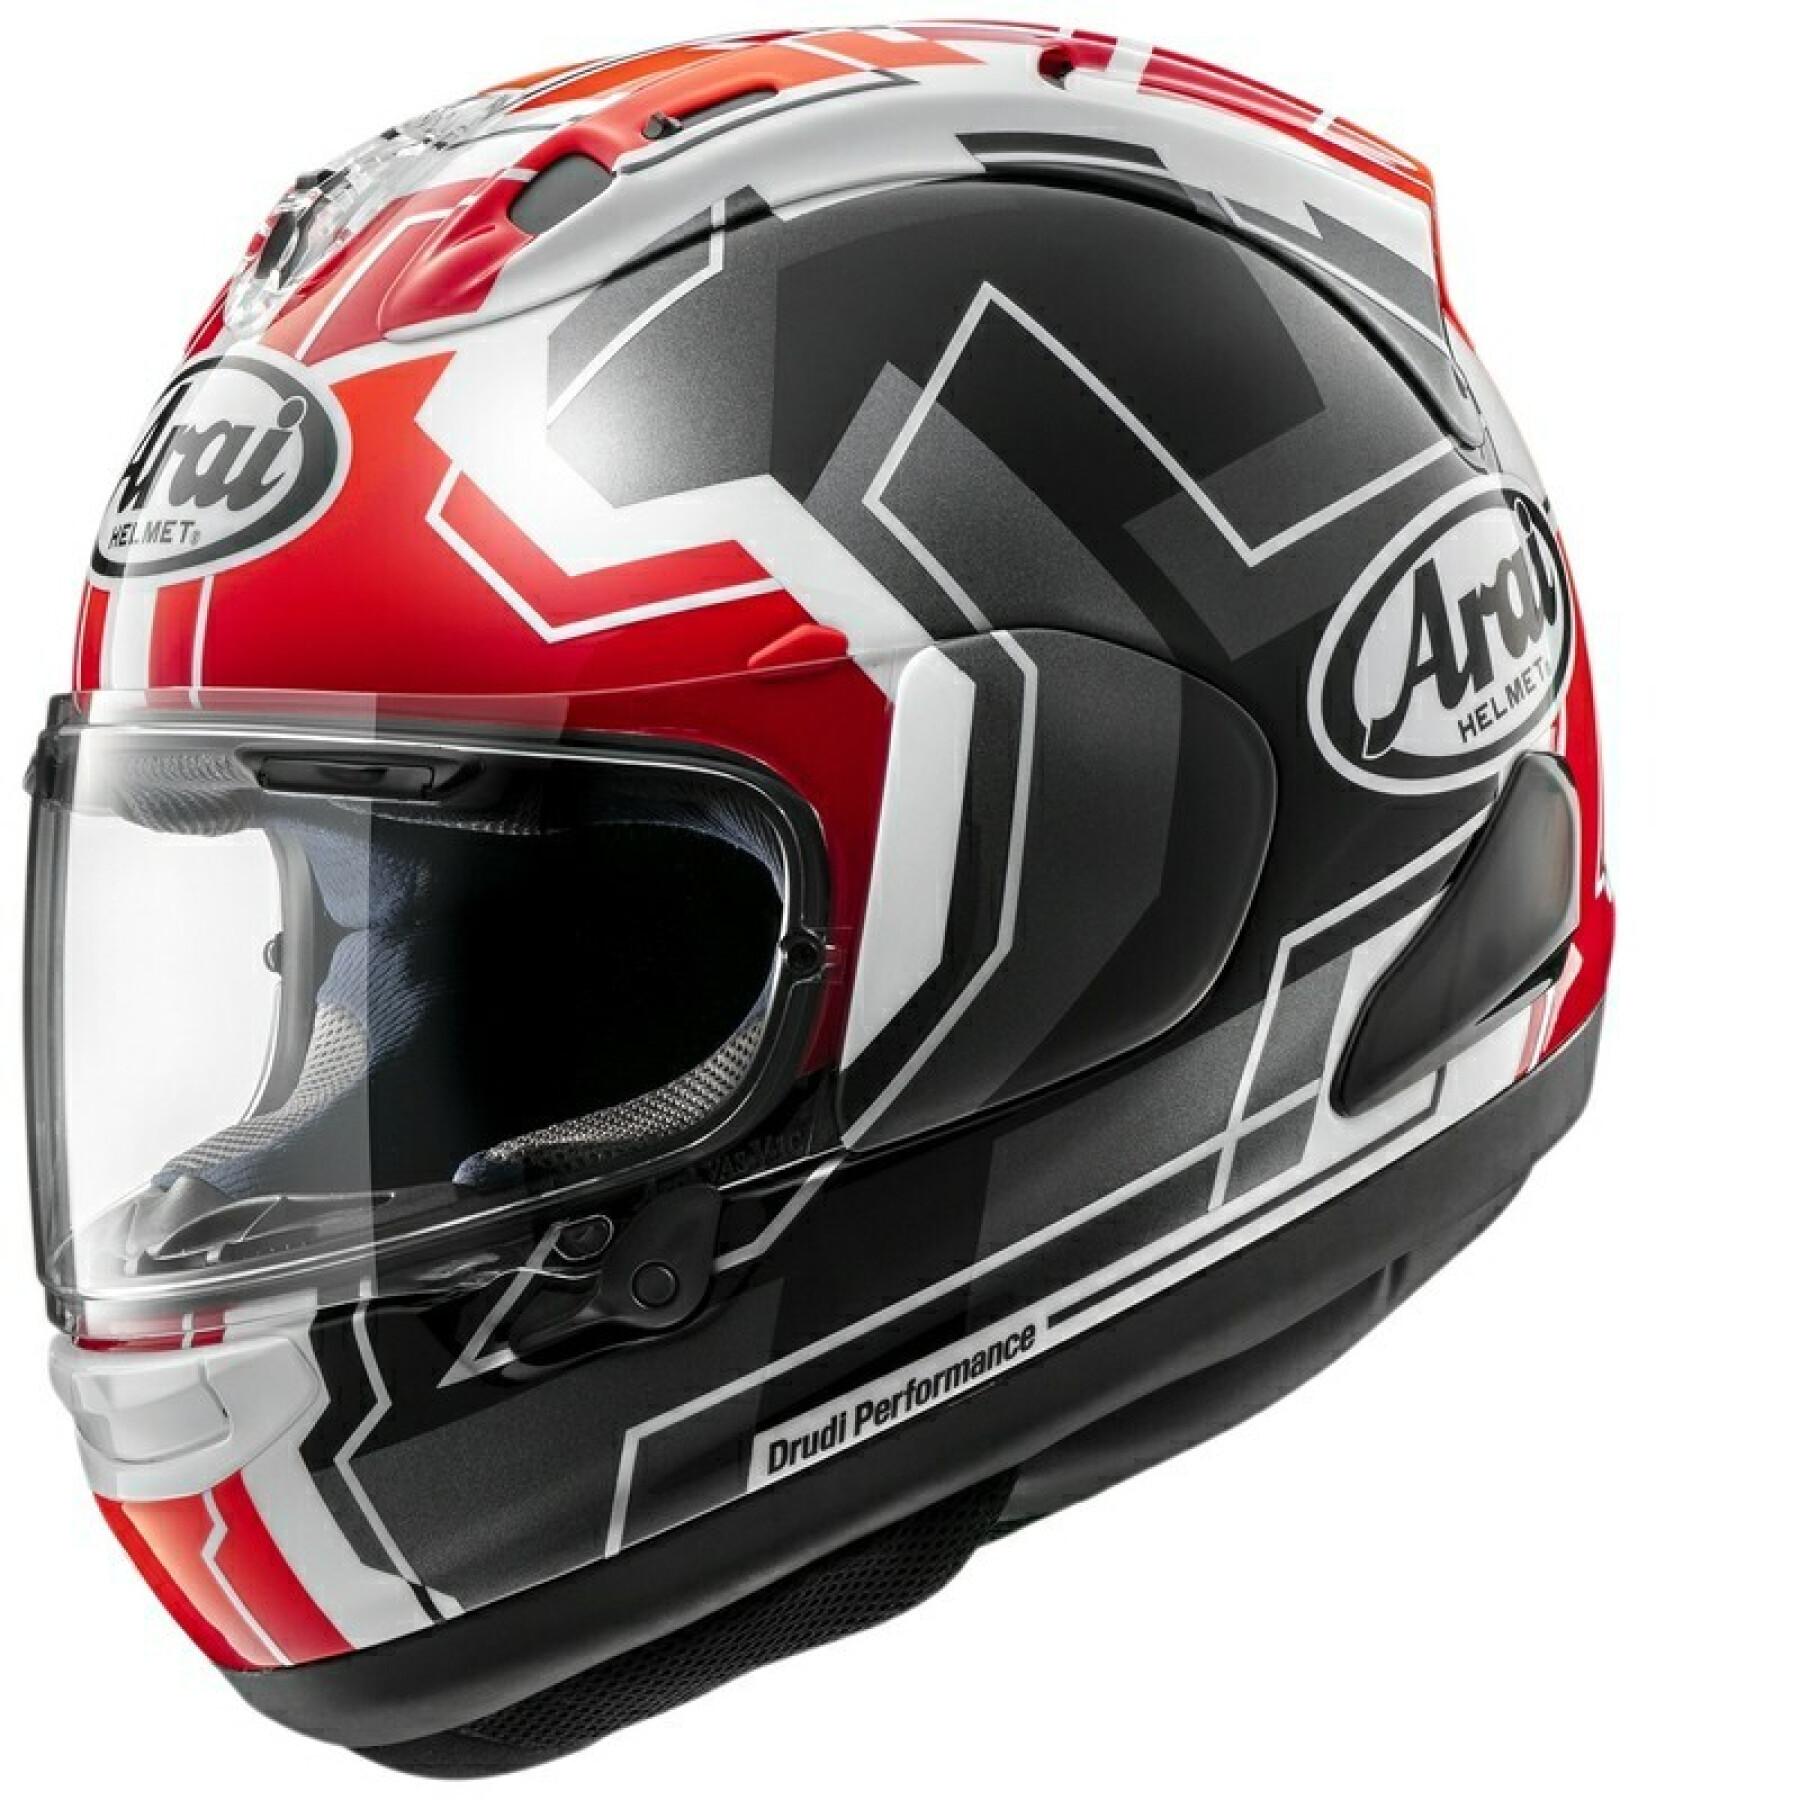 Full face motorcycle helmet Arai RX-7V EVO JR65